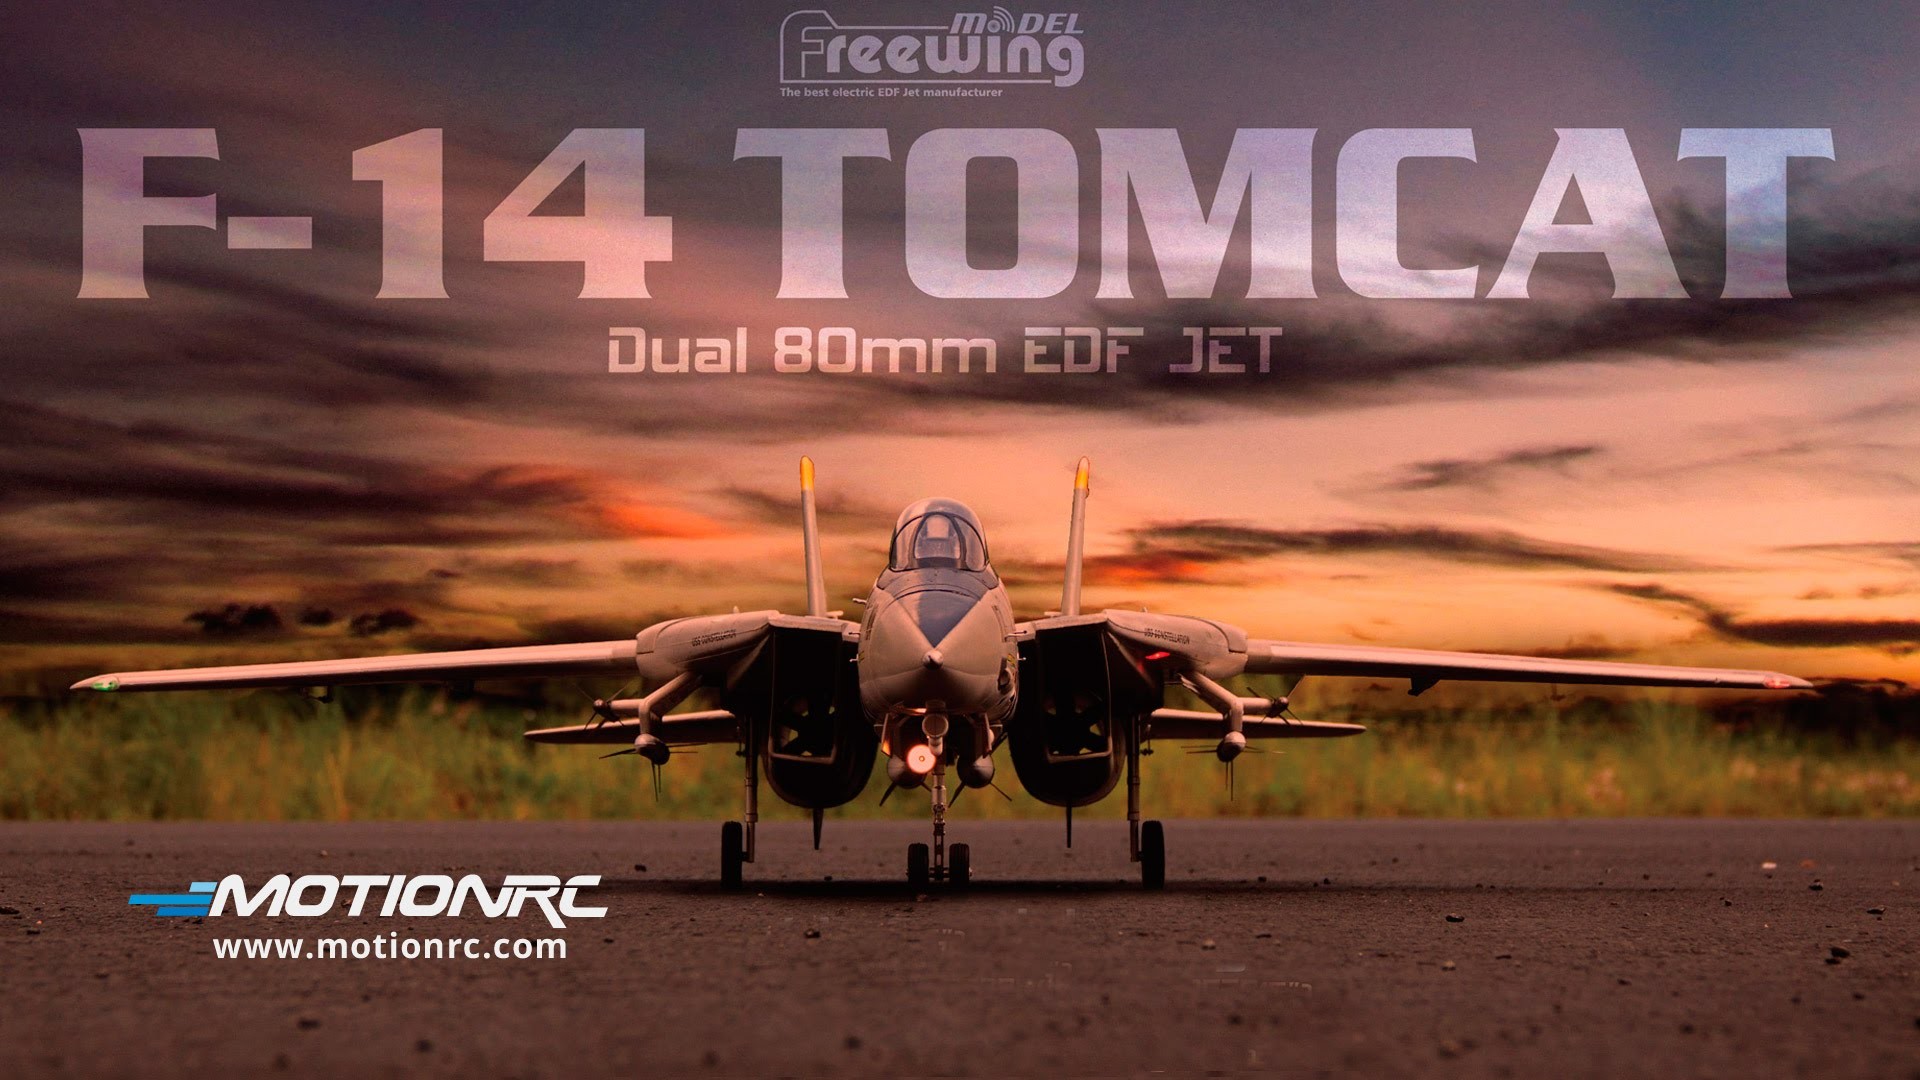 1920x1080, Freewing F 14 Tomcat Twin 80mm Edf Jet - F 14 Tomcat Wallpaper Hd - HD Wallpaper 